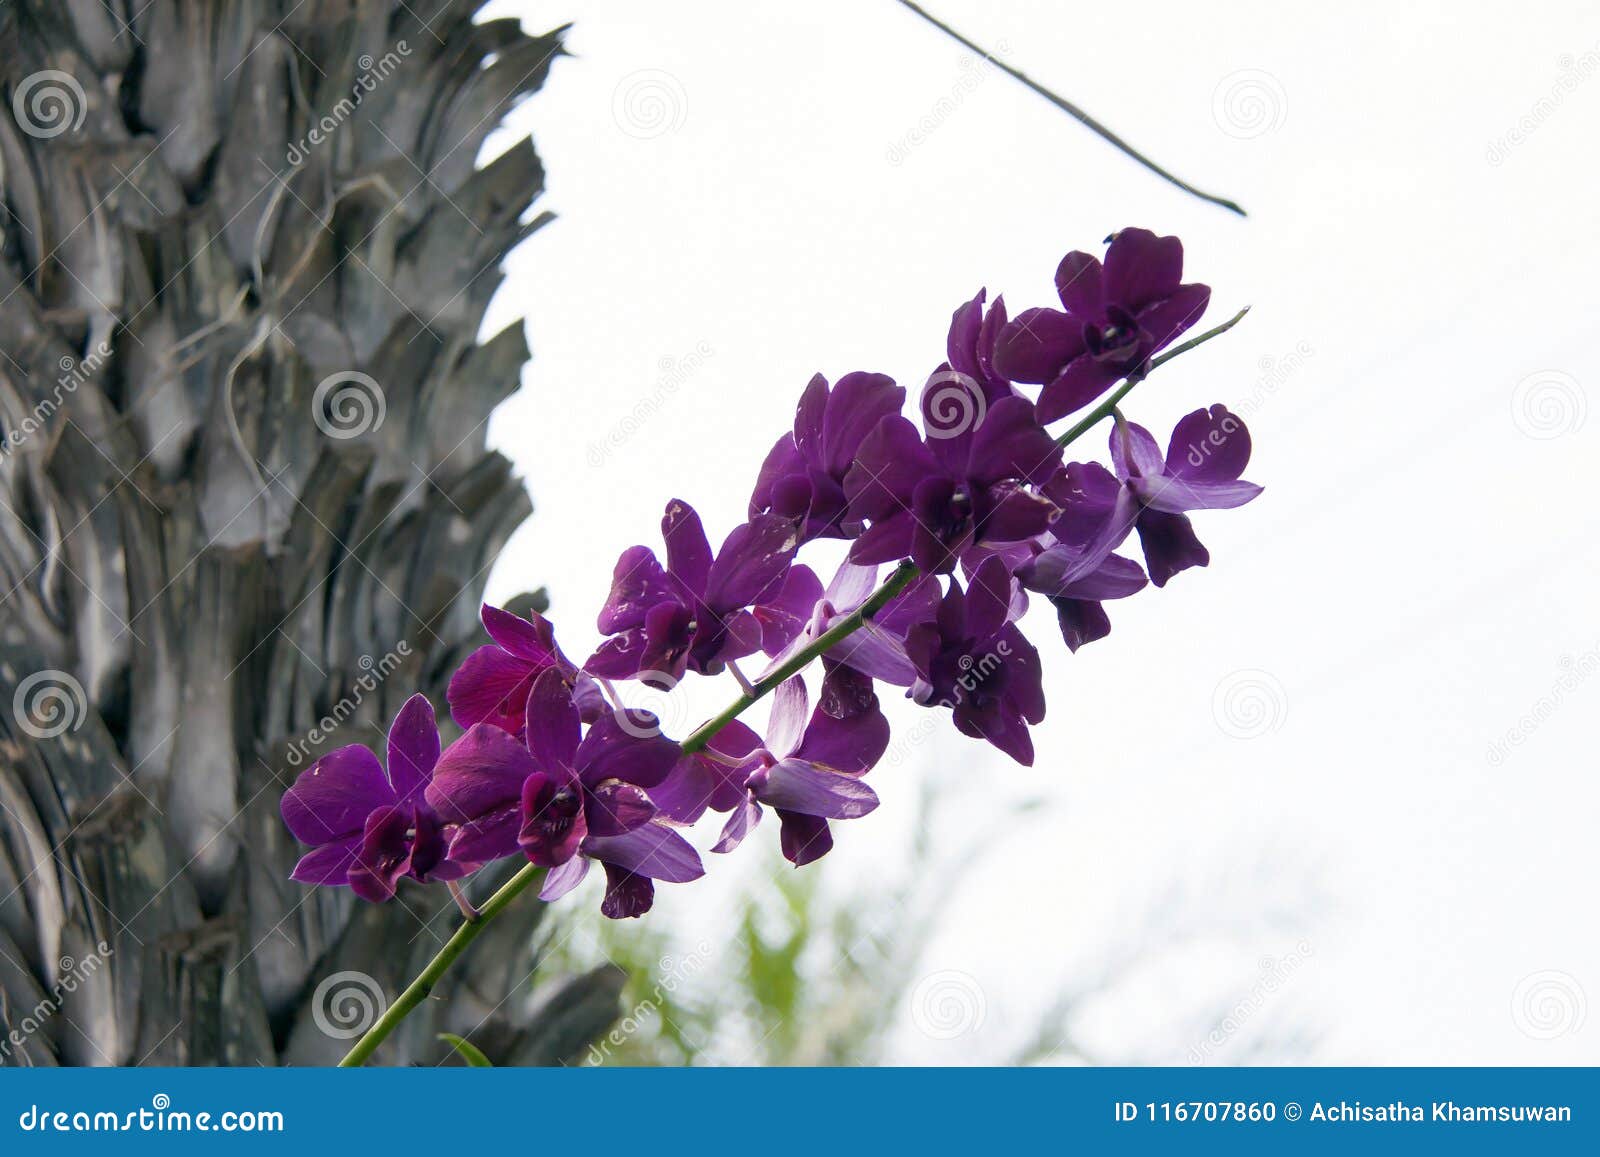 Flor Roxa Da Orquídea De Traça Na árvore O Phalaenopsis é Uma Das Orquídeas  As Mais Populares No Comércio Foto de Stock - Imagem de isolado, folhagem:  116707860